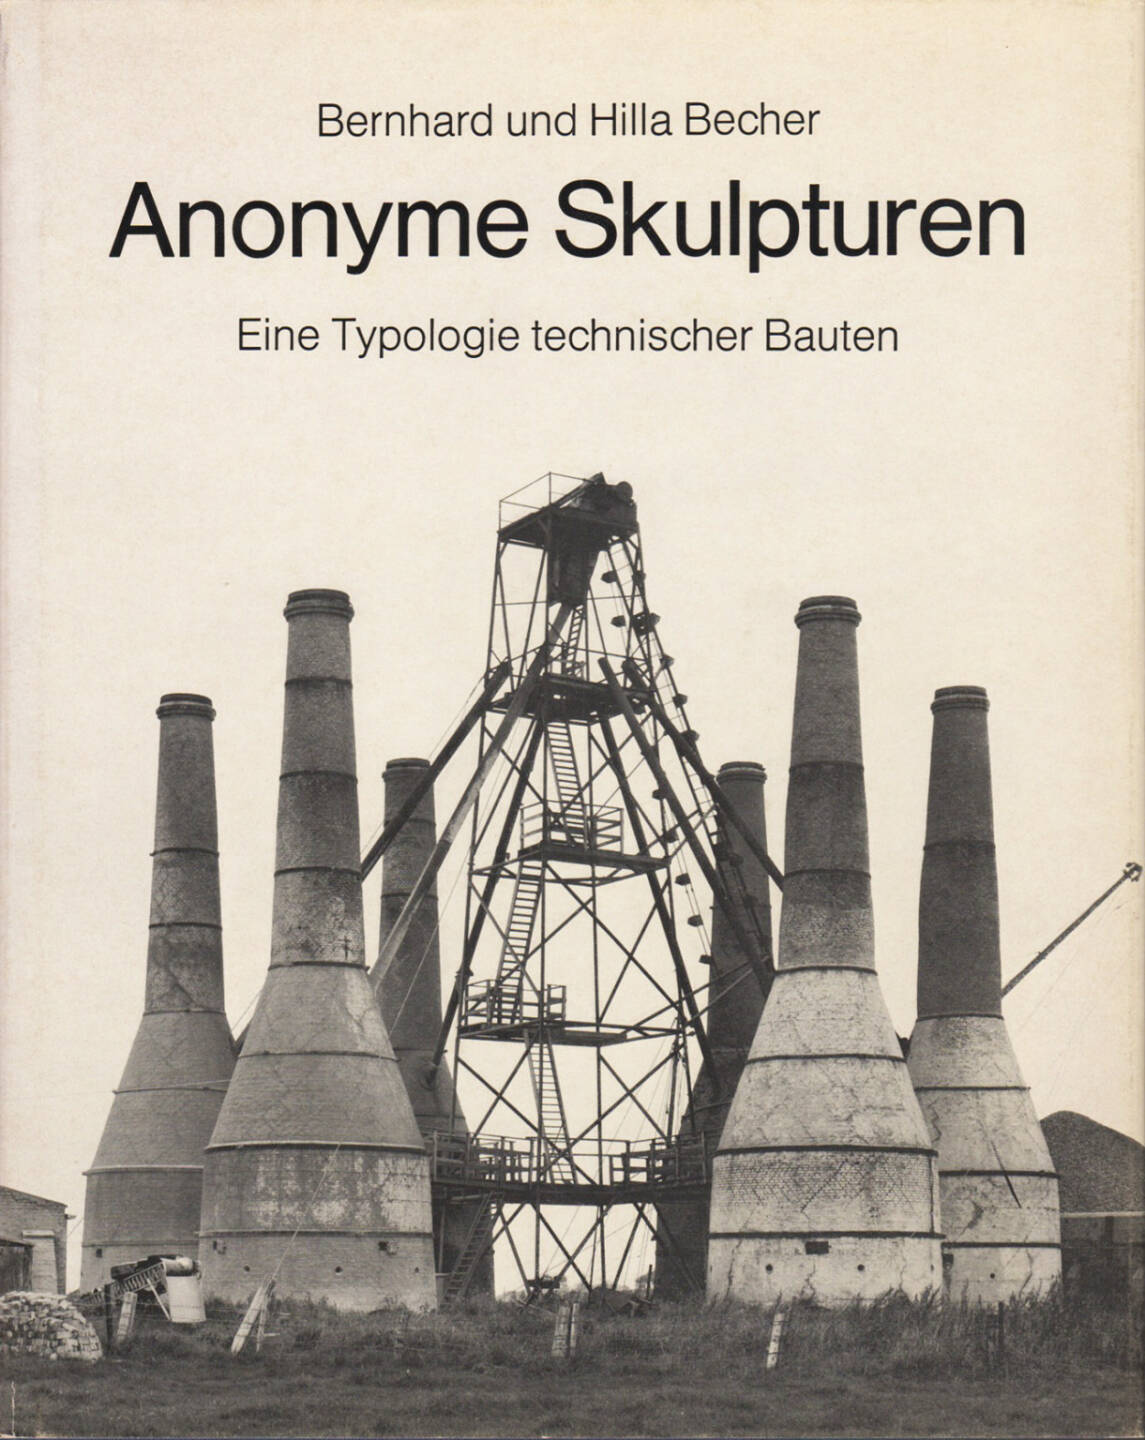 Bernhard und Hilla Becher - Anonyme Skulpturen: Eine Typologie technischer Bauten, Art-Press 1970, Cover - http://josefchladek.com/book/bernhard_und_hilla_becher_-_anonyme_skulpturen_eine_typologie_technischer_bauten